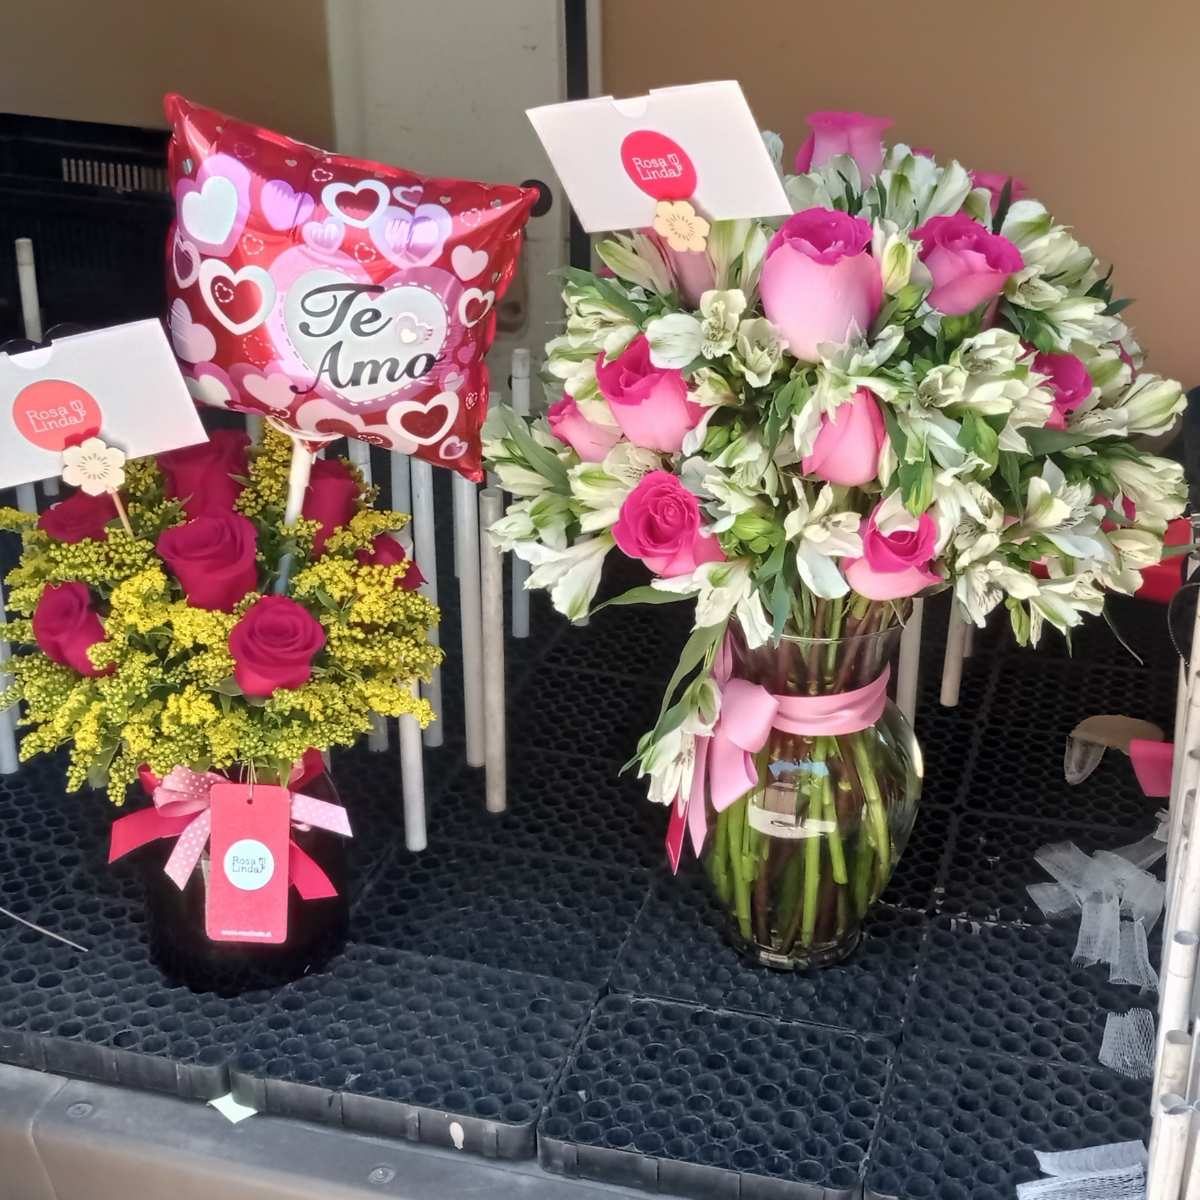 Caricias - Arreglo floral en florero con rosas ecuatorianas rojas, solidago y globo Te amo - Pedido 243509